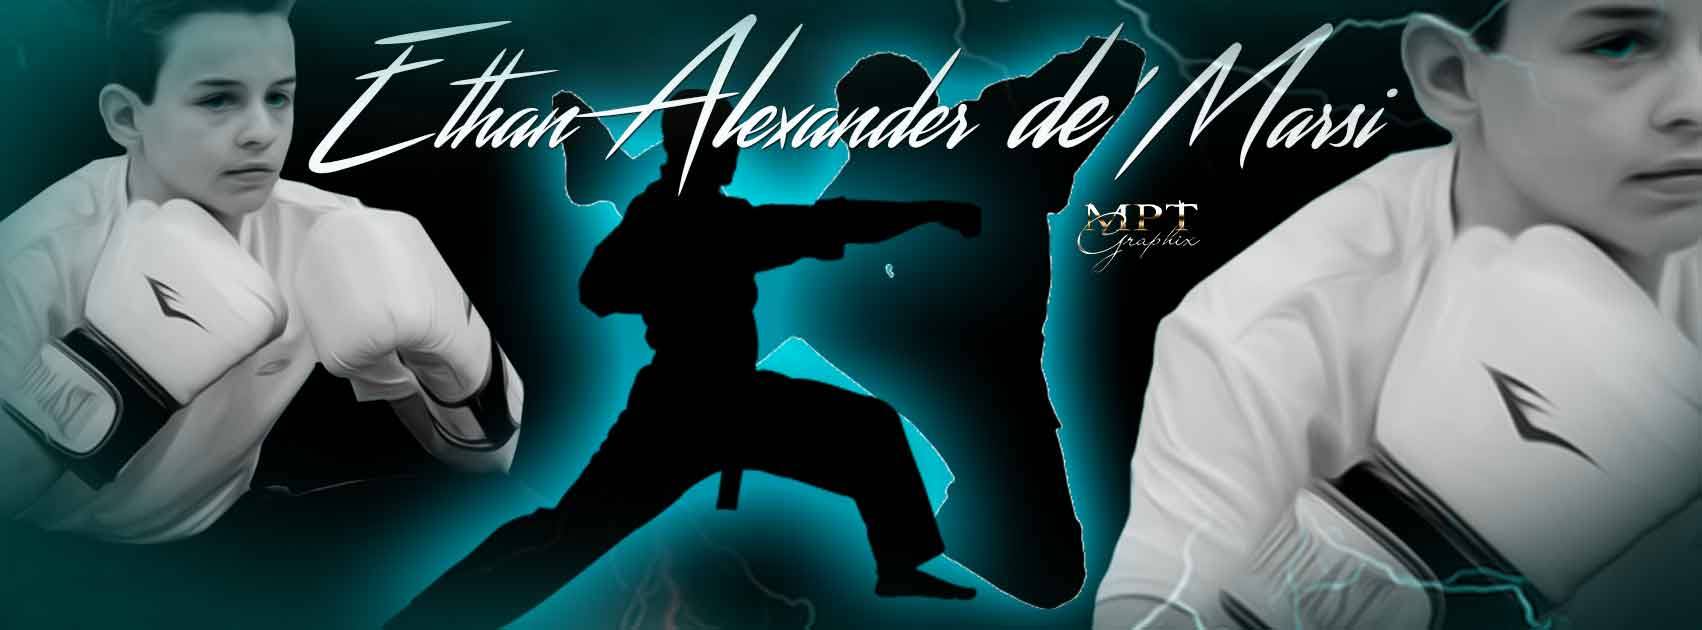 Ethan Alexander de'Marsi Pro Mixed Martial Arts